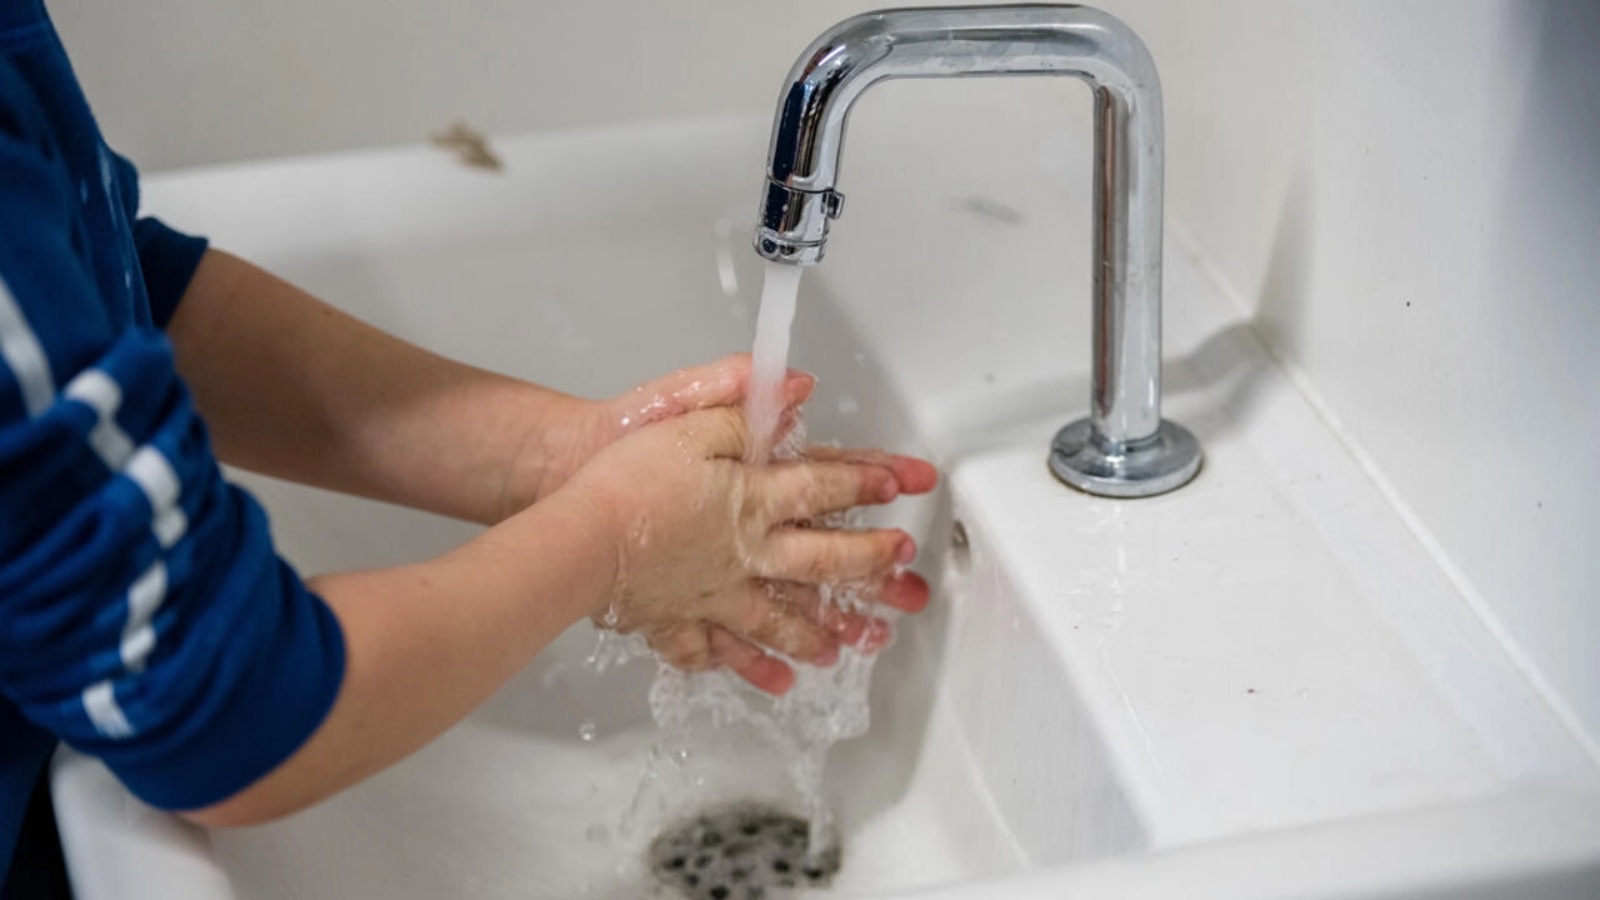 يُنصح بغسل اليدين للوقاية من العدوى بمسببات الأمراض المكورات العنقودية الذهبية والإشريكية القولونية ، والتي تتسبب في حدوث أعداد هائلة من الوفيات كل عام.